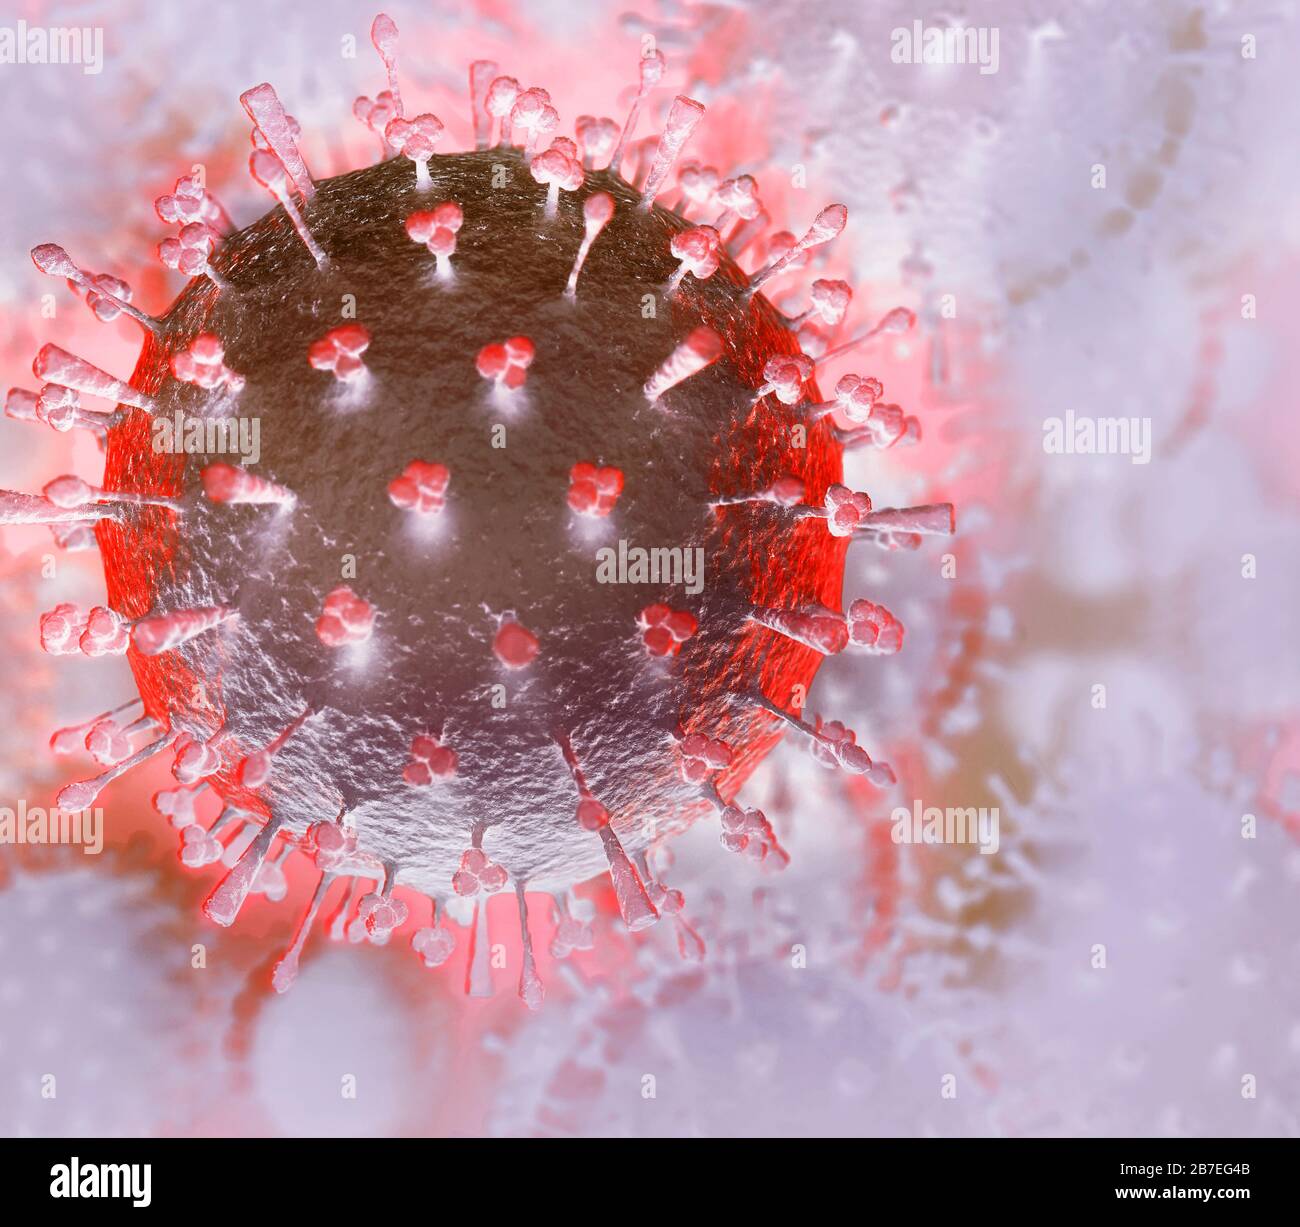 Coronavirus, COVID-19, rendering artistico in colori brillanti. Illustrazione 3D concettuale delle particelle del virus Corona. Diffusione di virus, epidemie e pandemiche Foto Stock